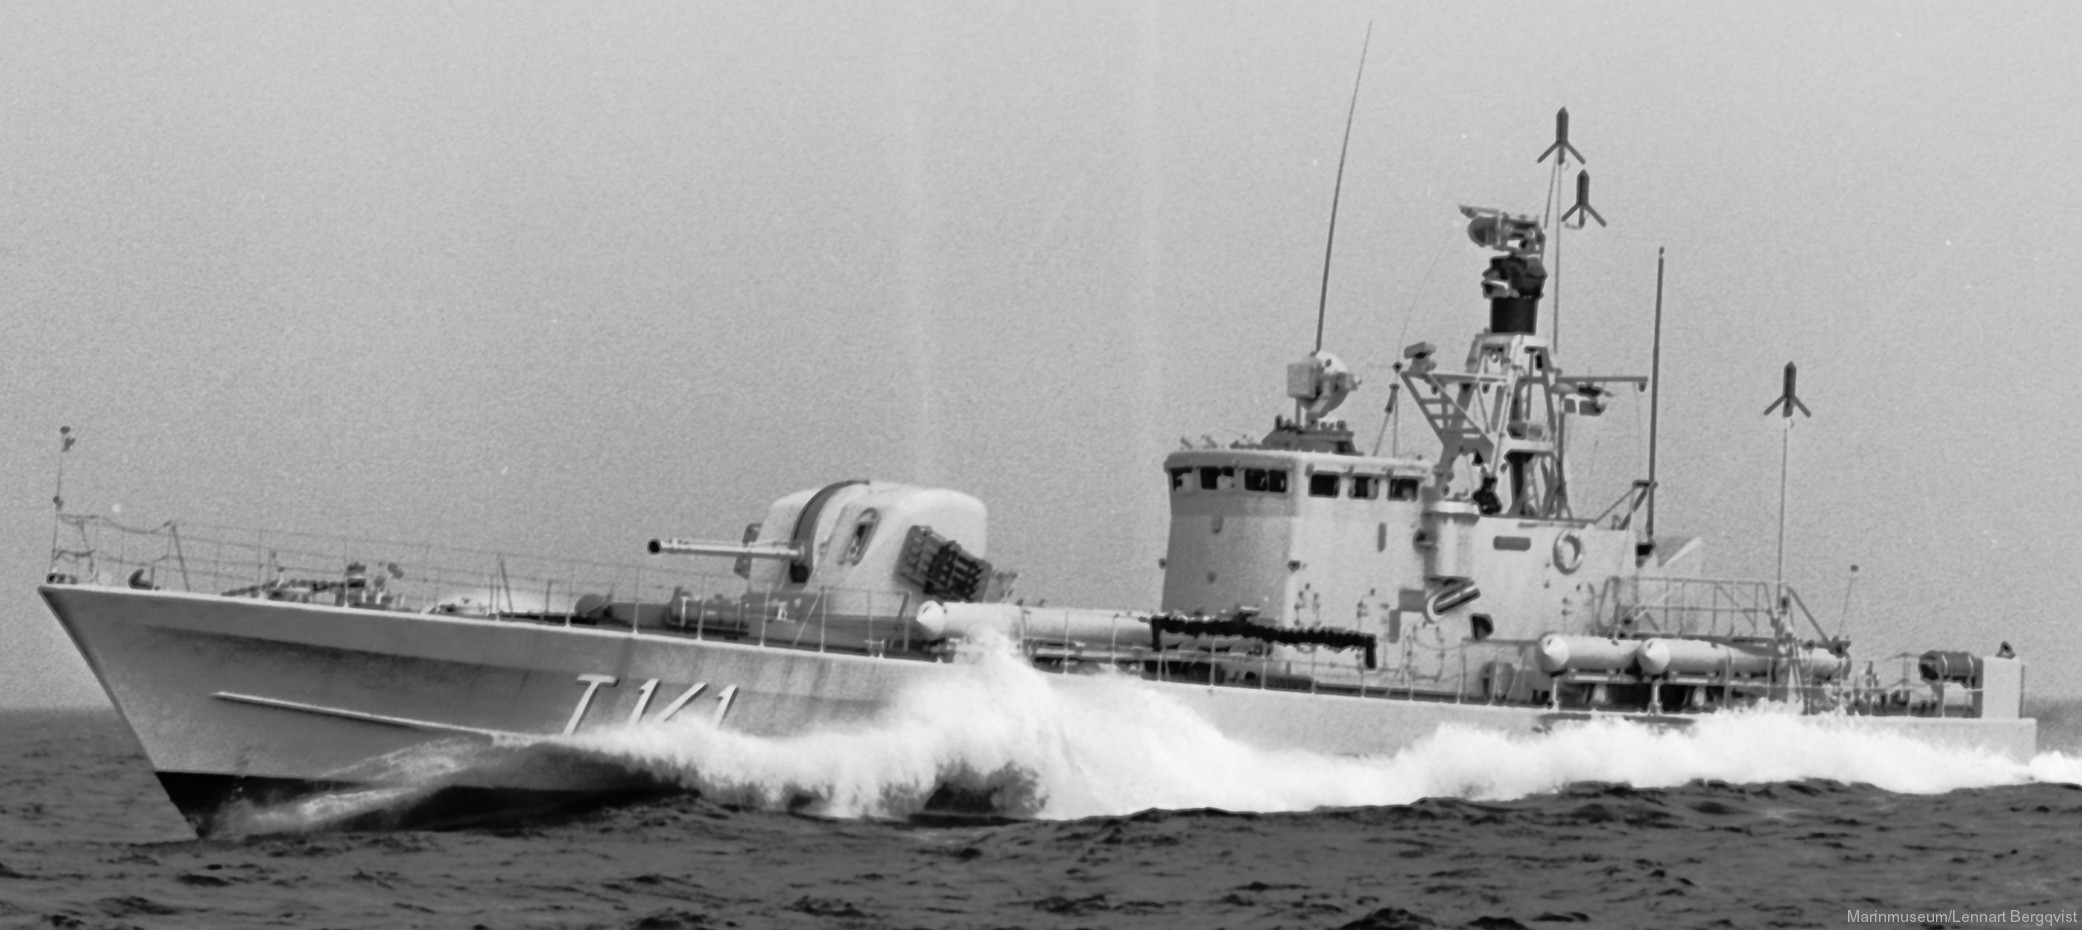 t141 strömstad hswms hms norrköping class fast attack craft torpedo missile patrol boat swedish navy svenska marinen 05